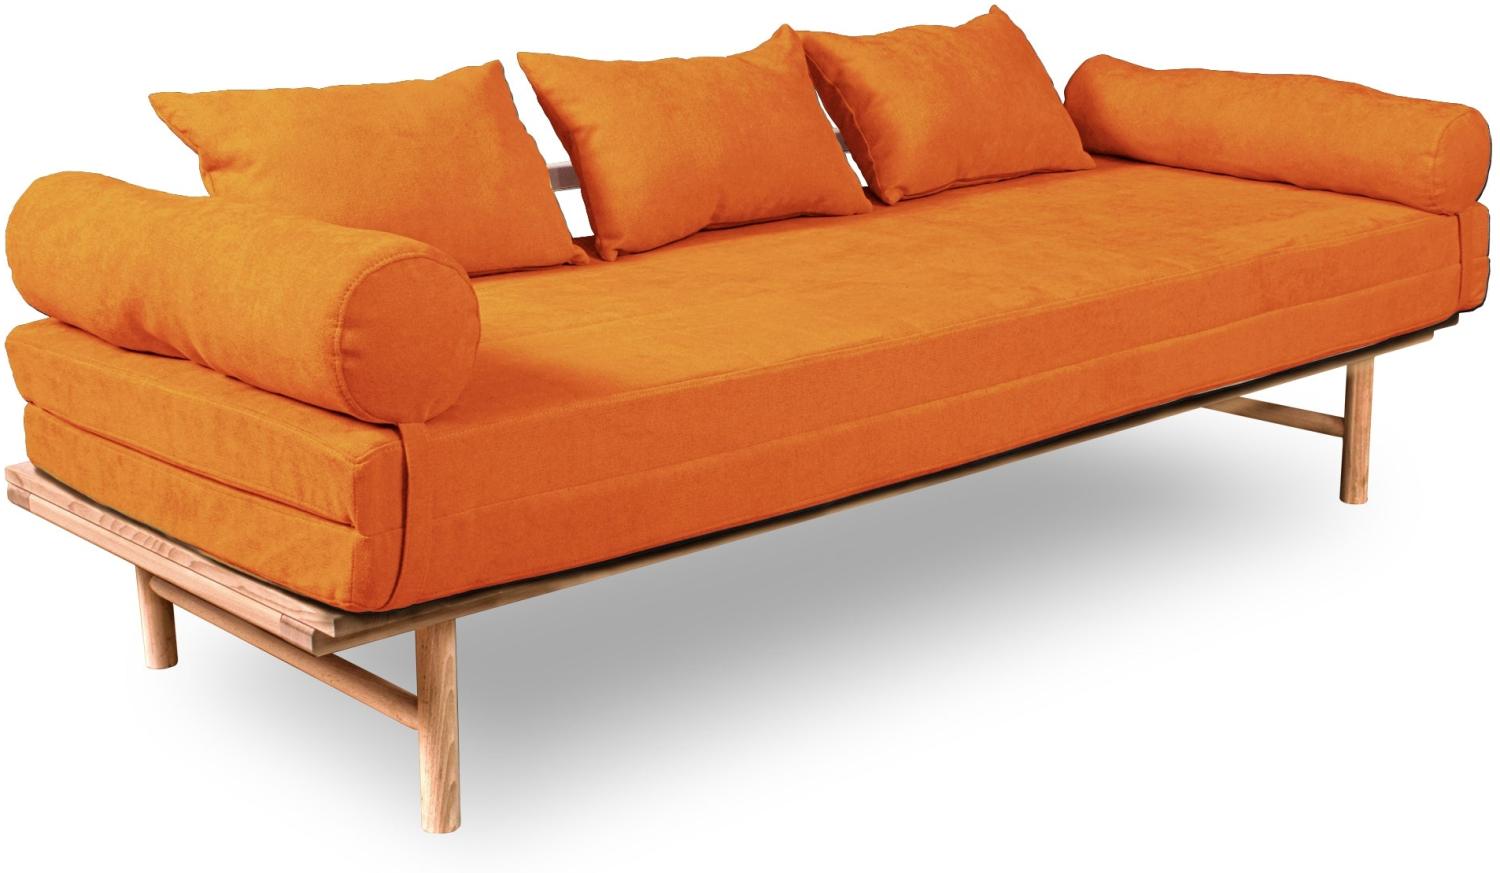 Marior HOME 'Le MAR' Klappbett, Buchenholz, natürliche Farbe, Orange Bild 1